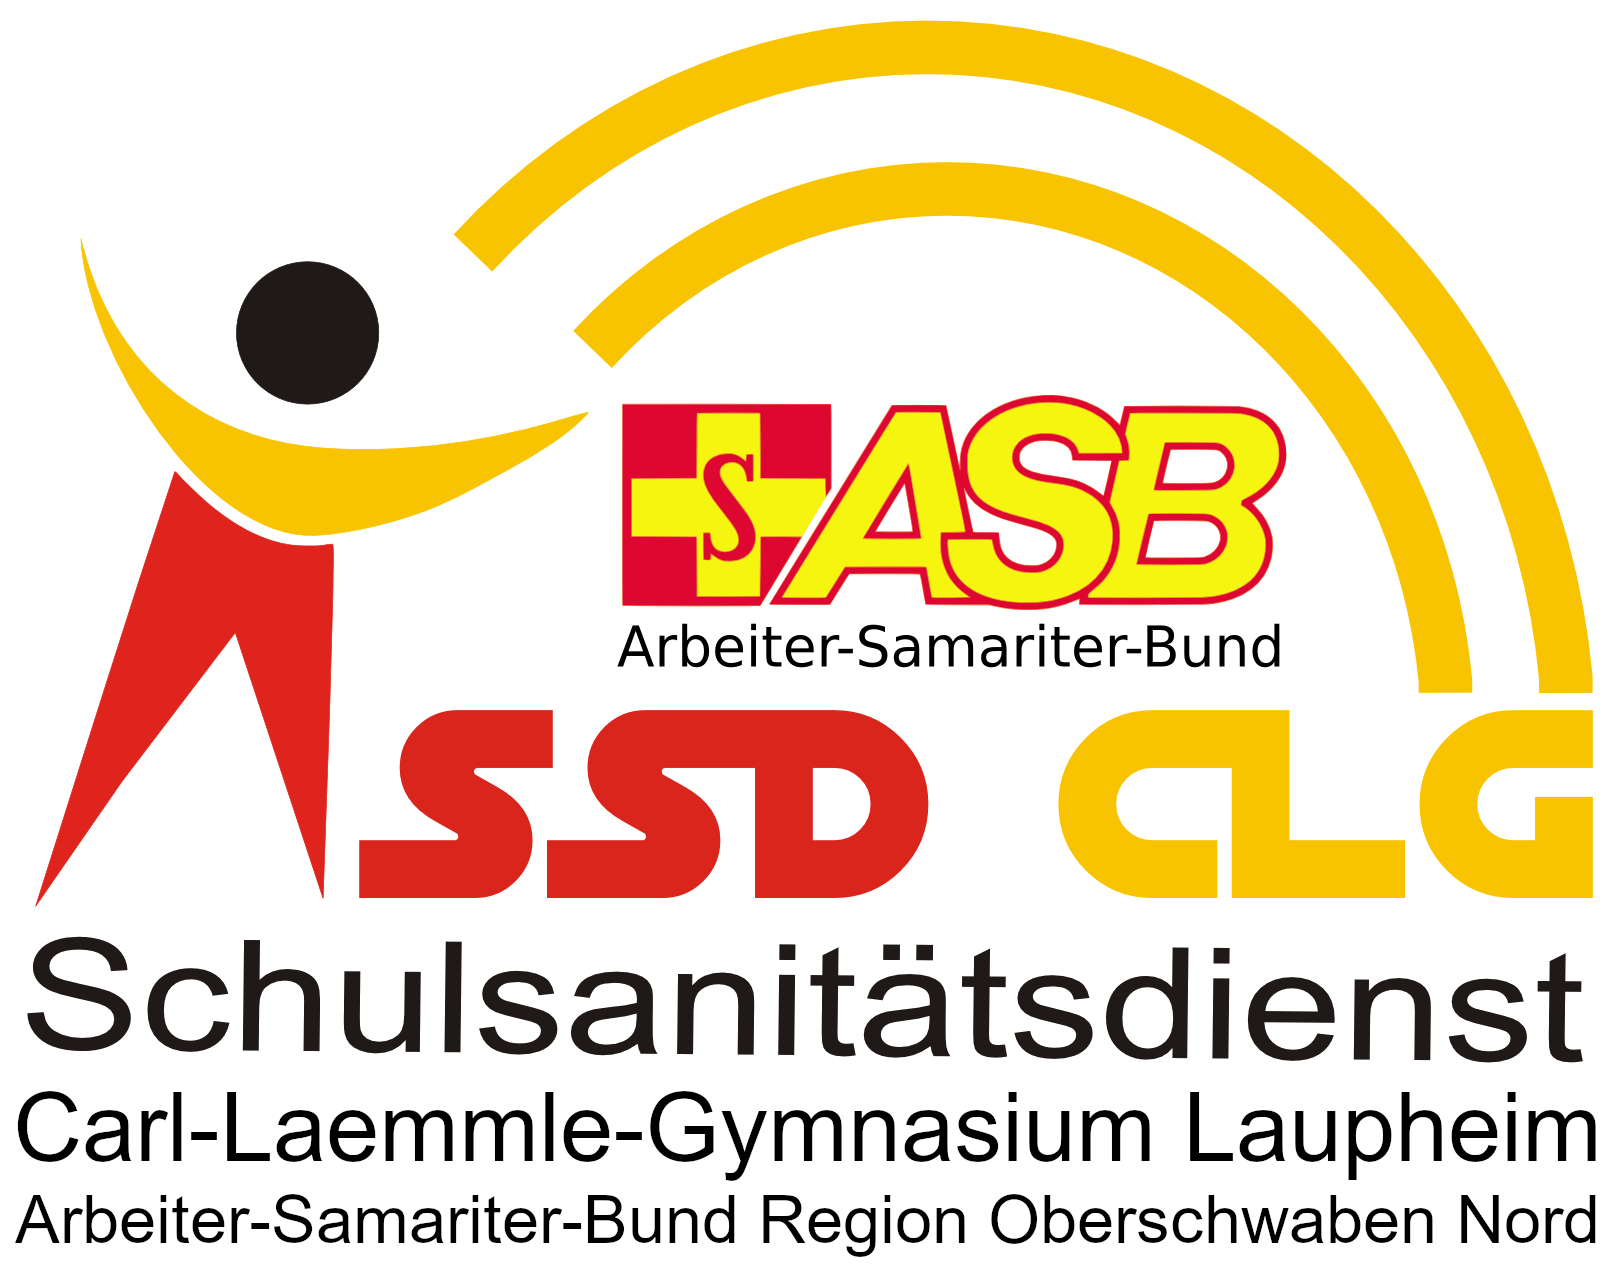 Schulsanitätsdienst Carl-Laemmle-Gynmasium